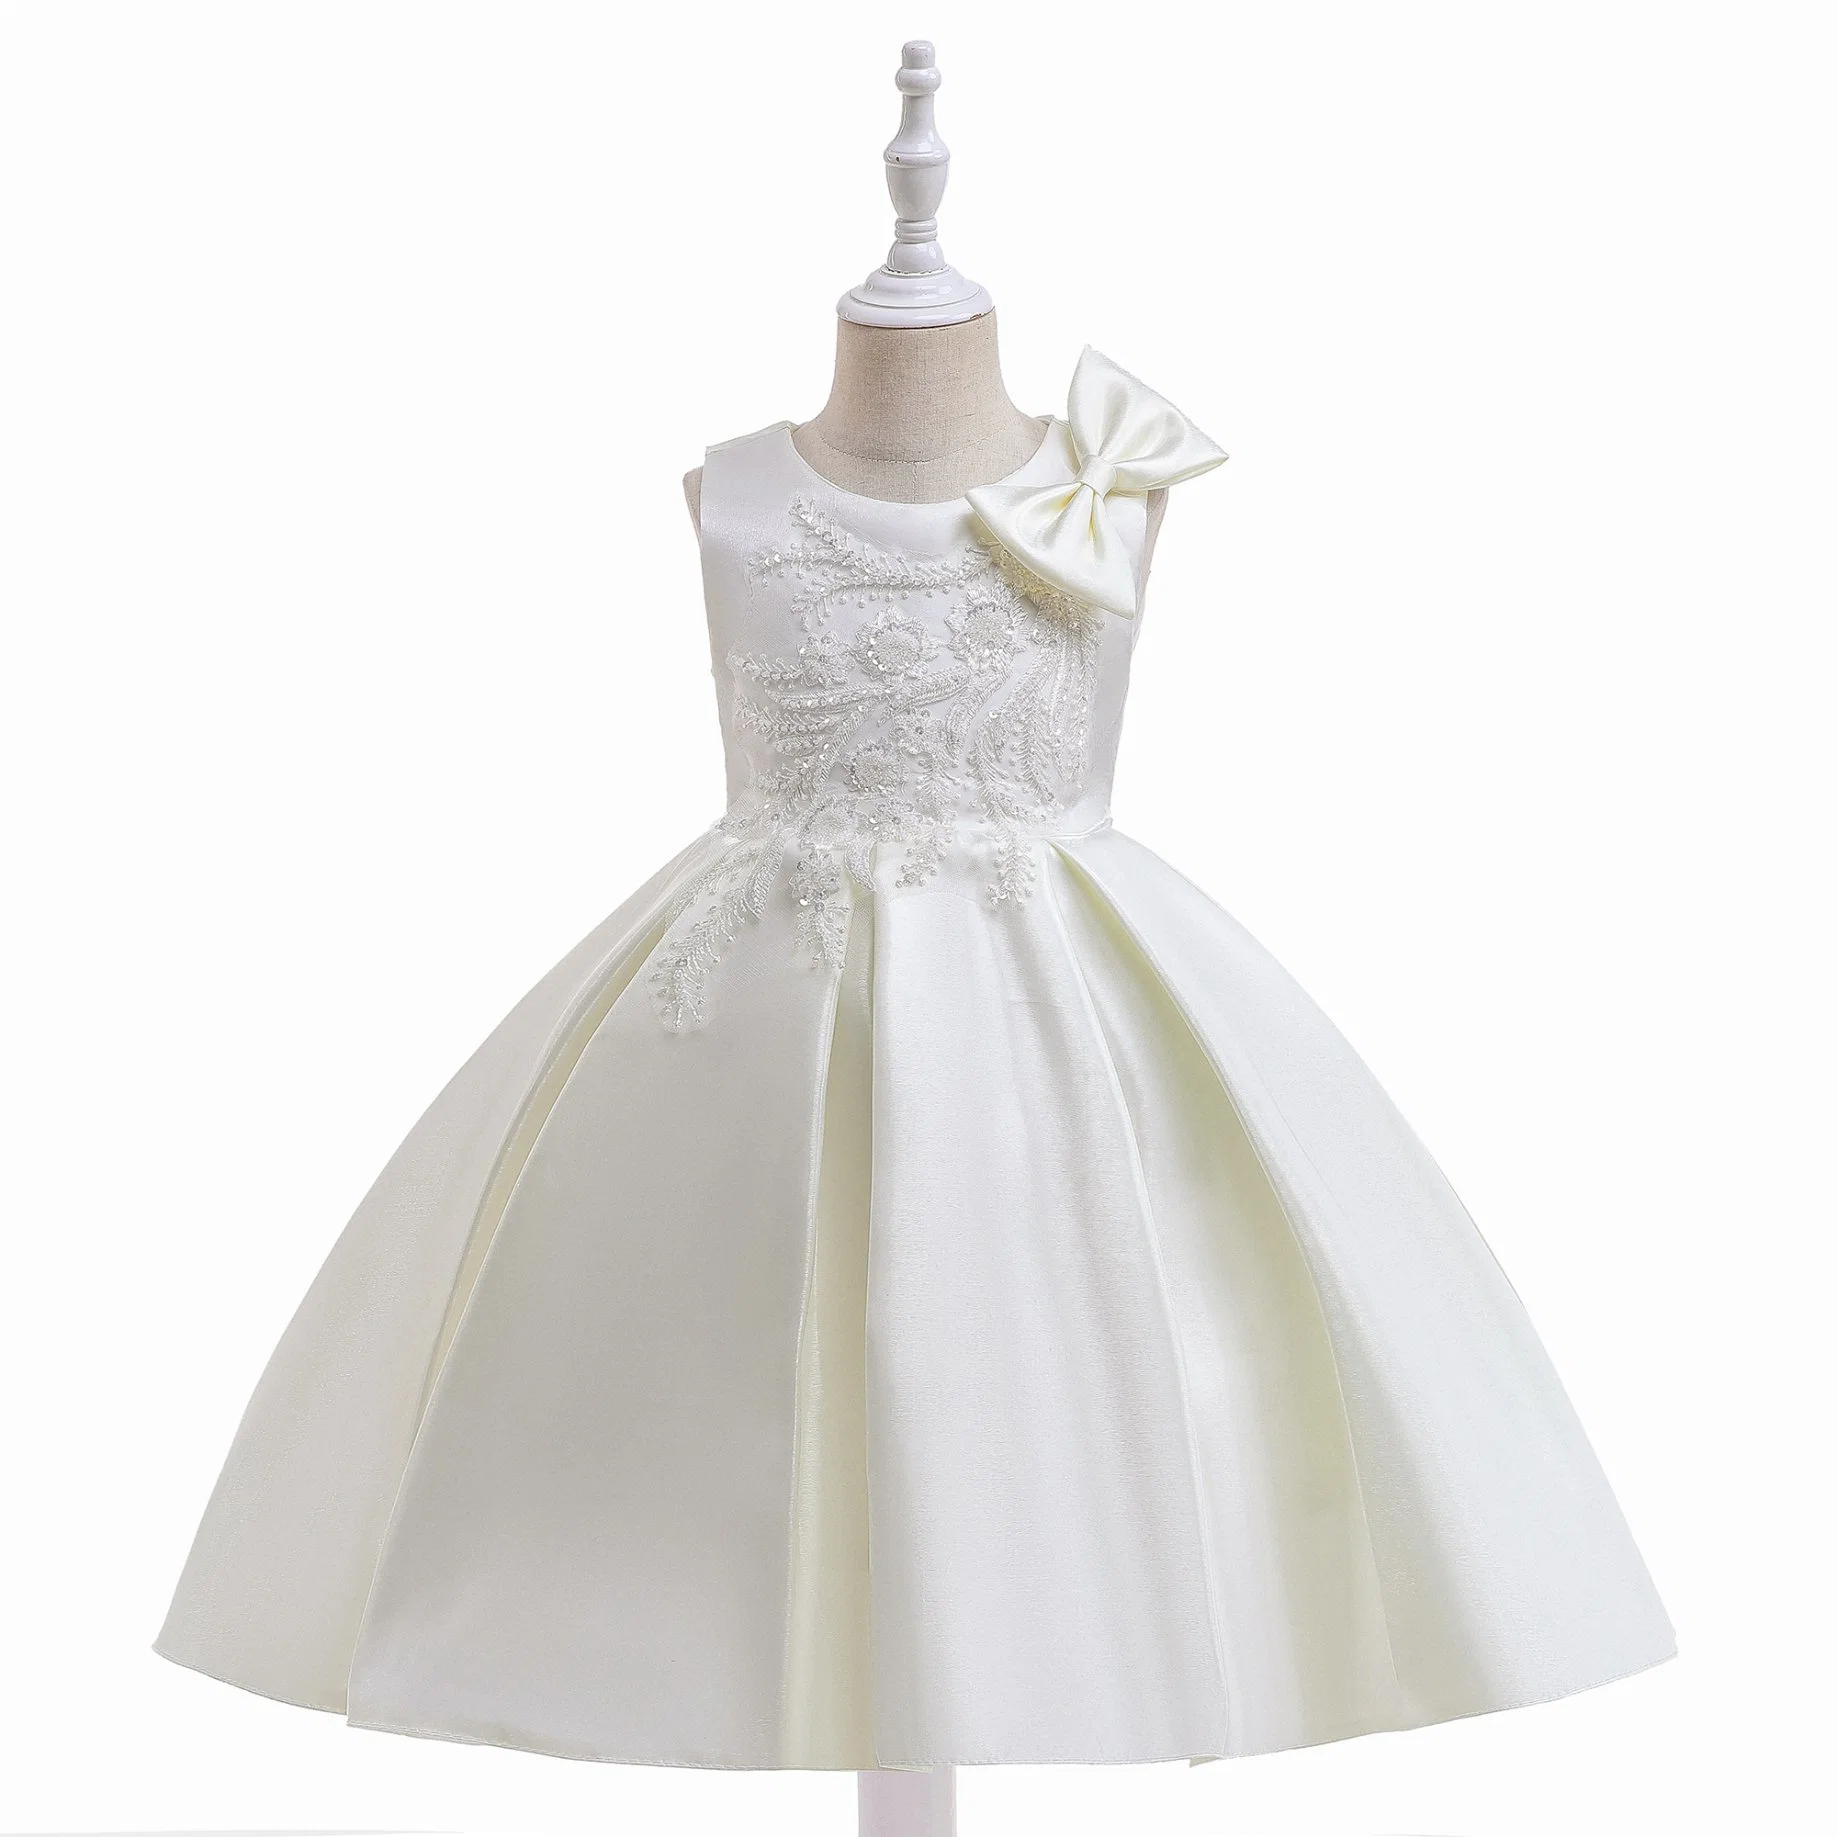 Children's Apparel Baby Wear Girls Party Garment Ball Gown Princess Frock Kids Sweet Dress